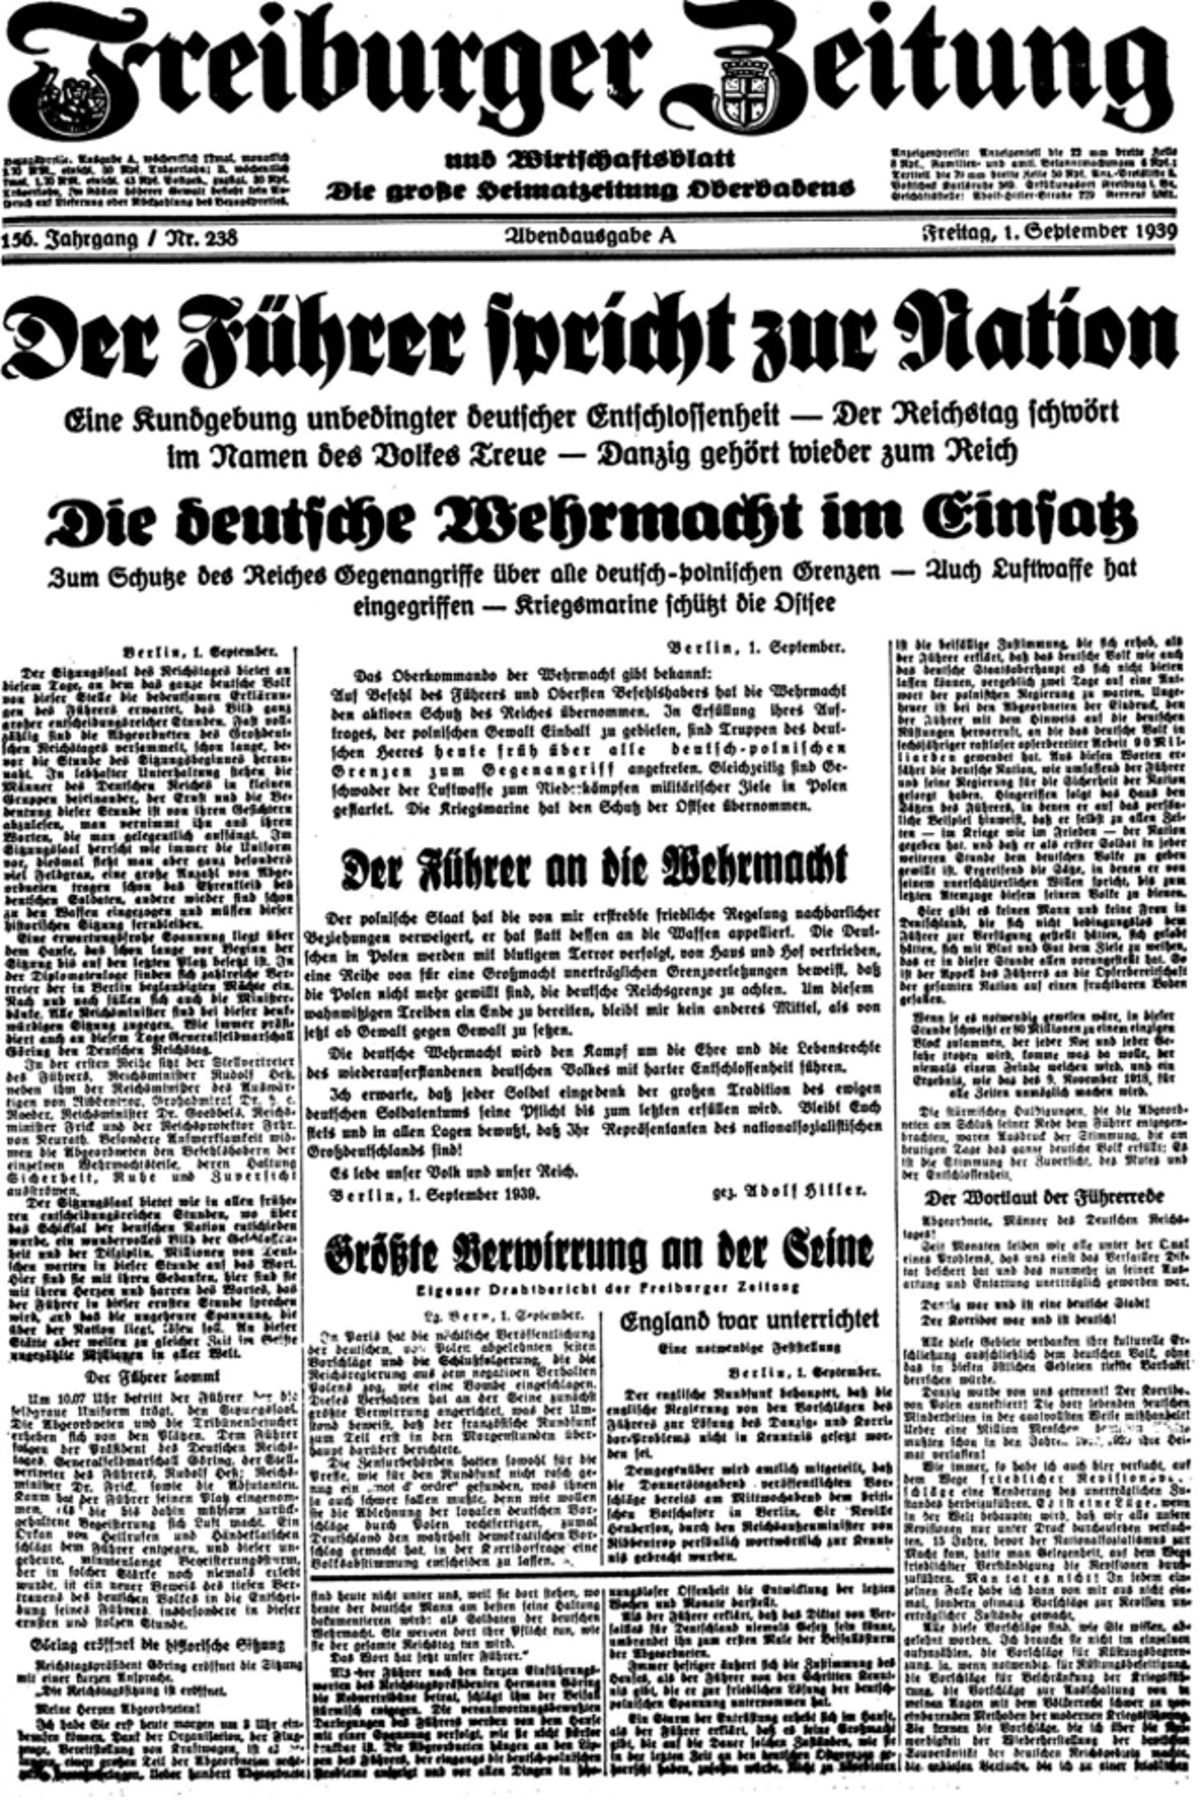 Мировые газеты выйдут с обложками 1939 года к годовщине начала войны